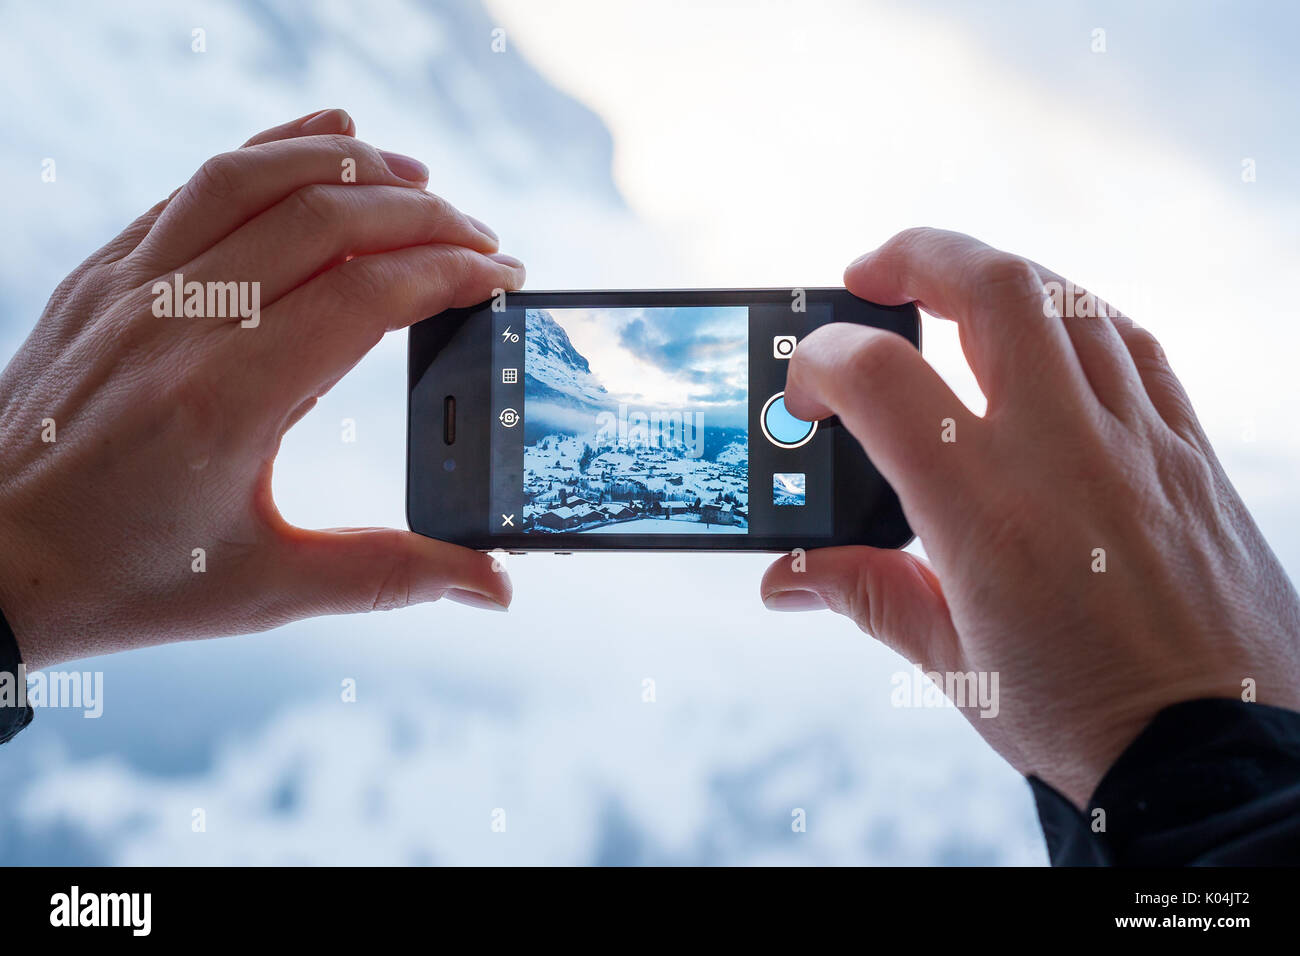 GRINDELWALD, Suiza - febrero 4, 2014: la mujer toma una fotografía de las montañas mediante la aplicación Instagram en un Apple iPhone. Instagram permite a los usuarios Foto de stock